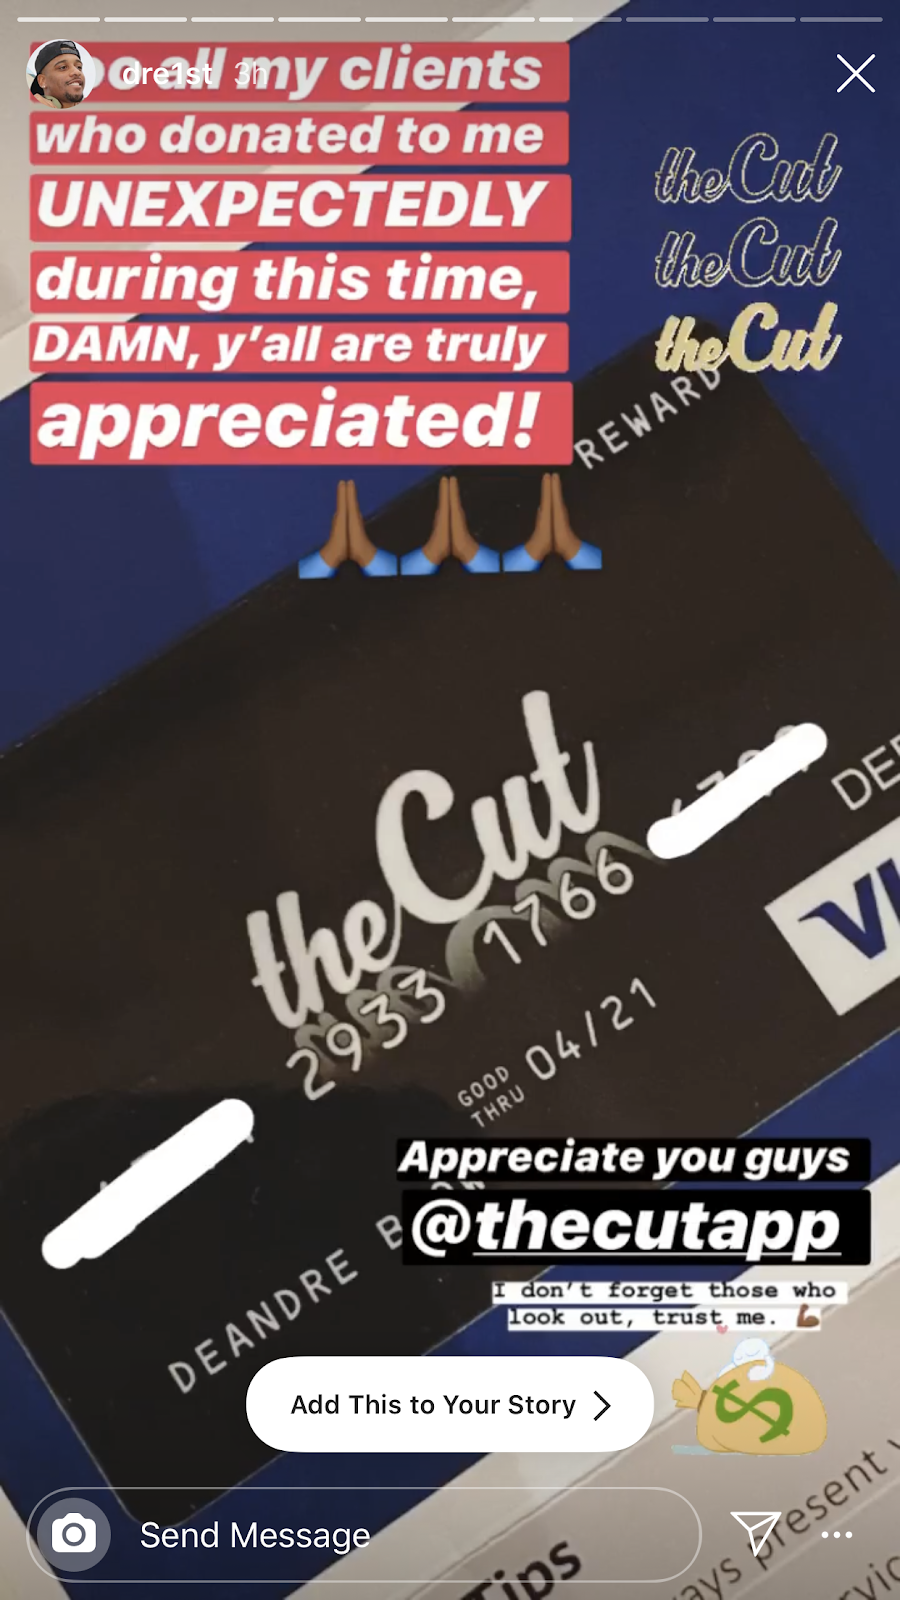 The cut app